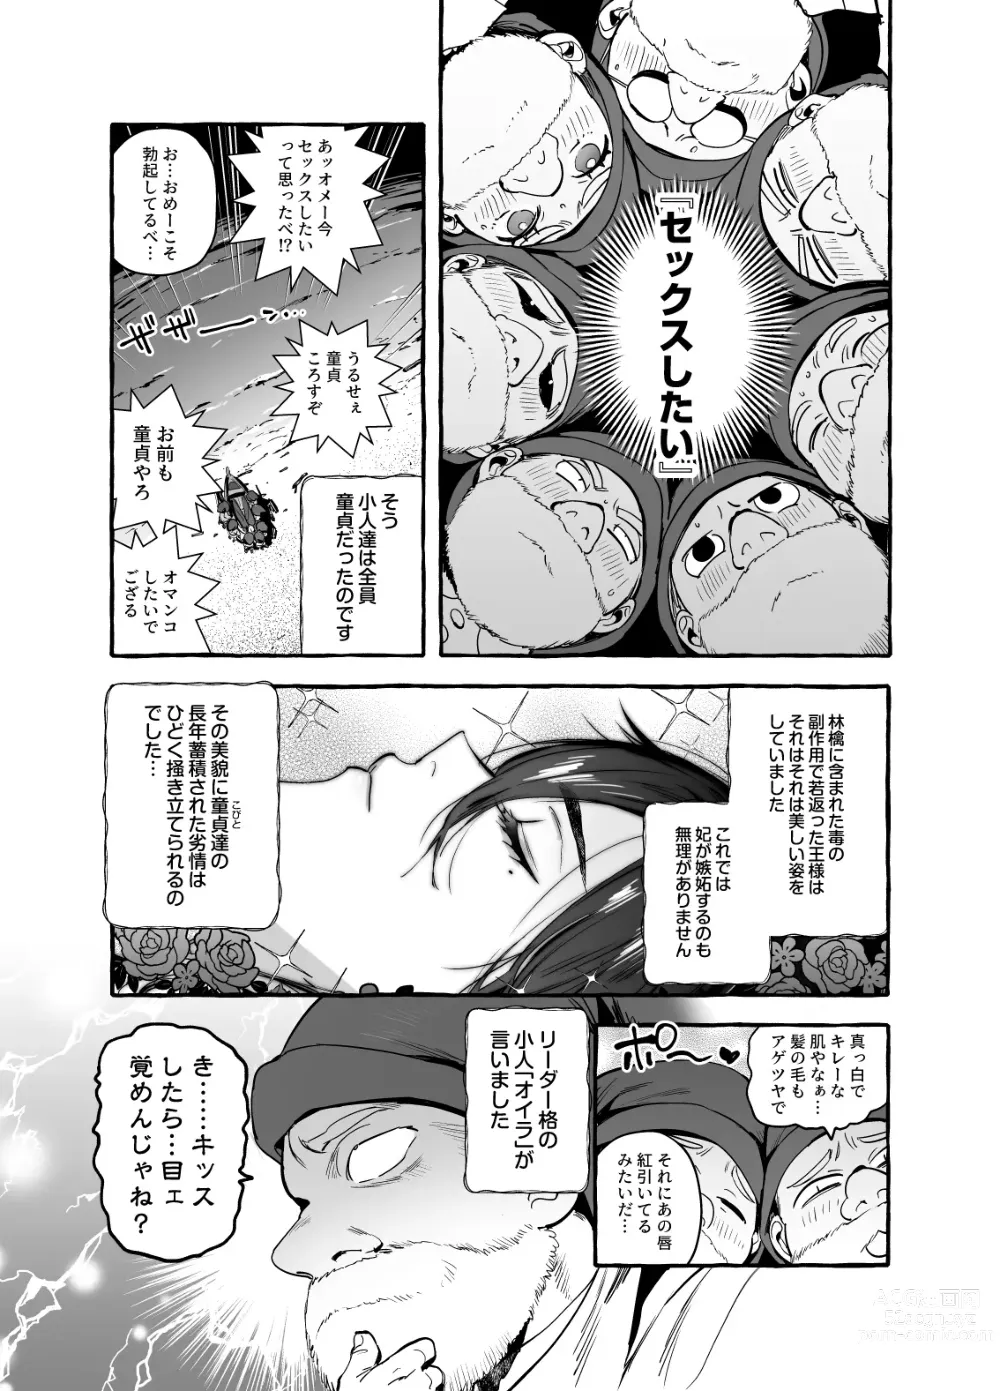 Page 11 of doujinshi Shirayuki Ou to Shichinin no Yaro-domo